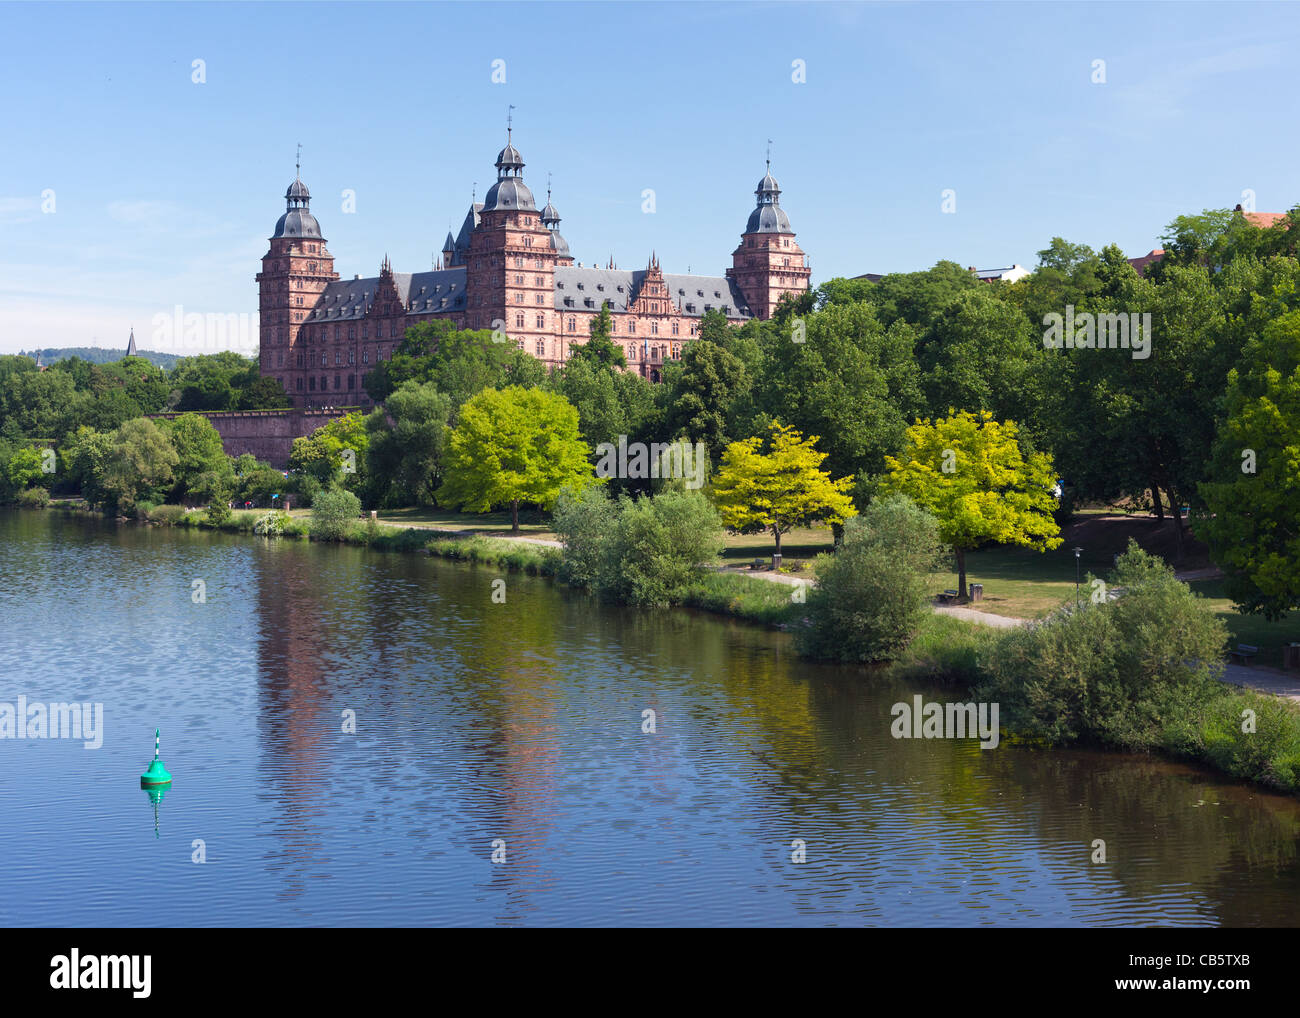 Une vue d'été de la rivière Main et Schloss Johannisburg dans la ville bavaroise d'Aschaffenburg. Banque D'Images